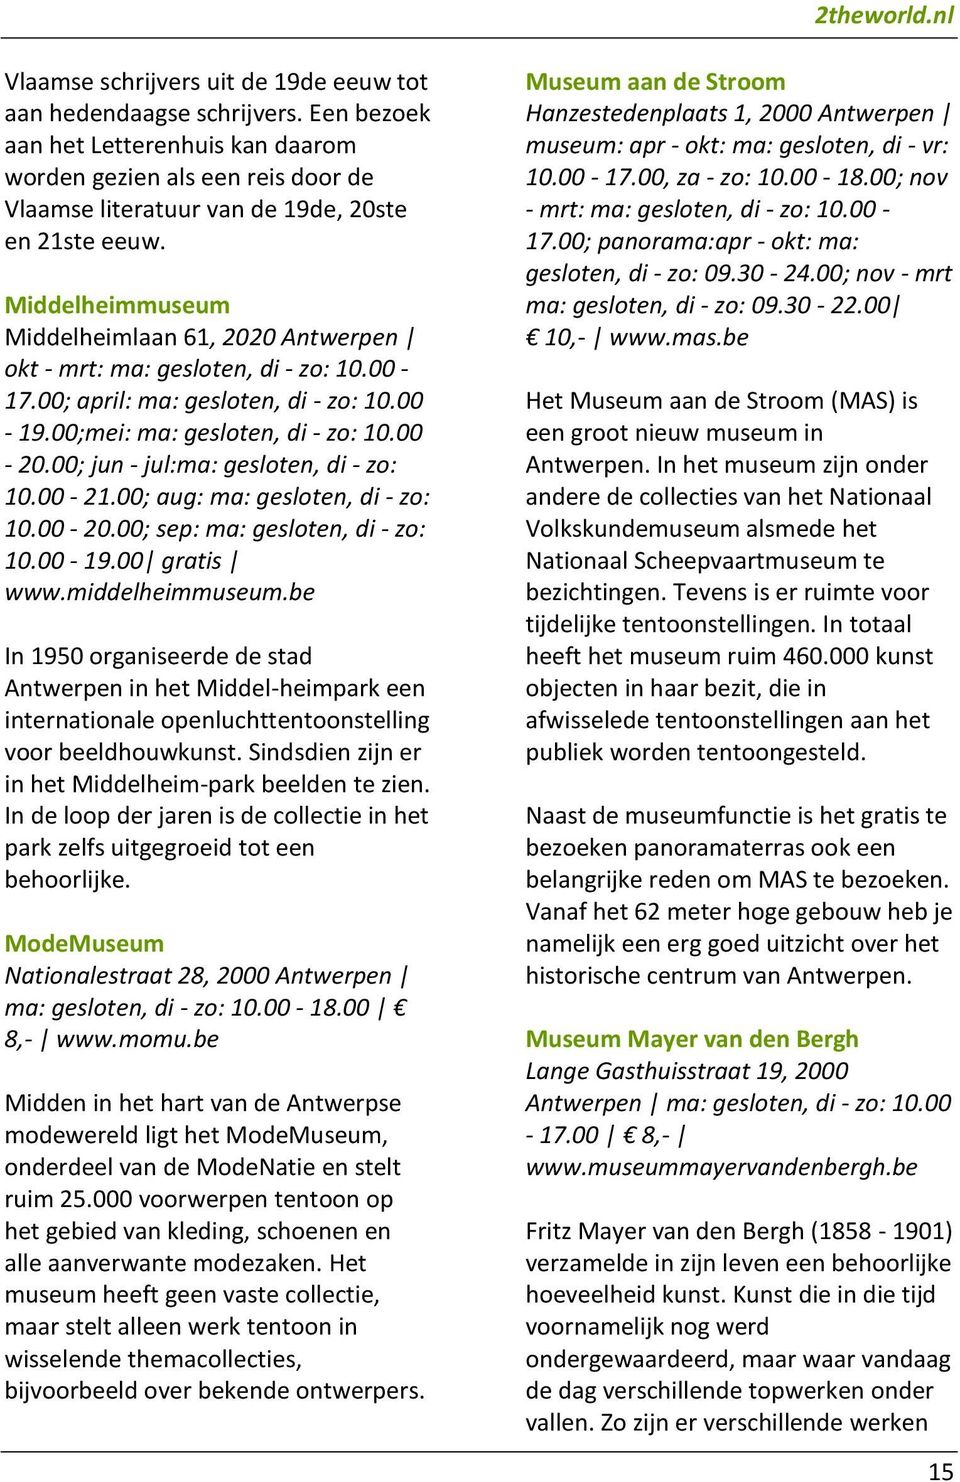 Middelheimmuseum Middelheimlaan 61, 2020 Antwerpen okt - mrt: ma: gesloten, di - zo: 10.00-17.00; april: ma: gesloten, di - zo: 10.00-19.00;mei: ma: gesloten, di - zo: 10.00-20.